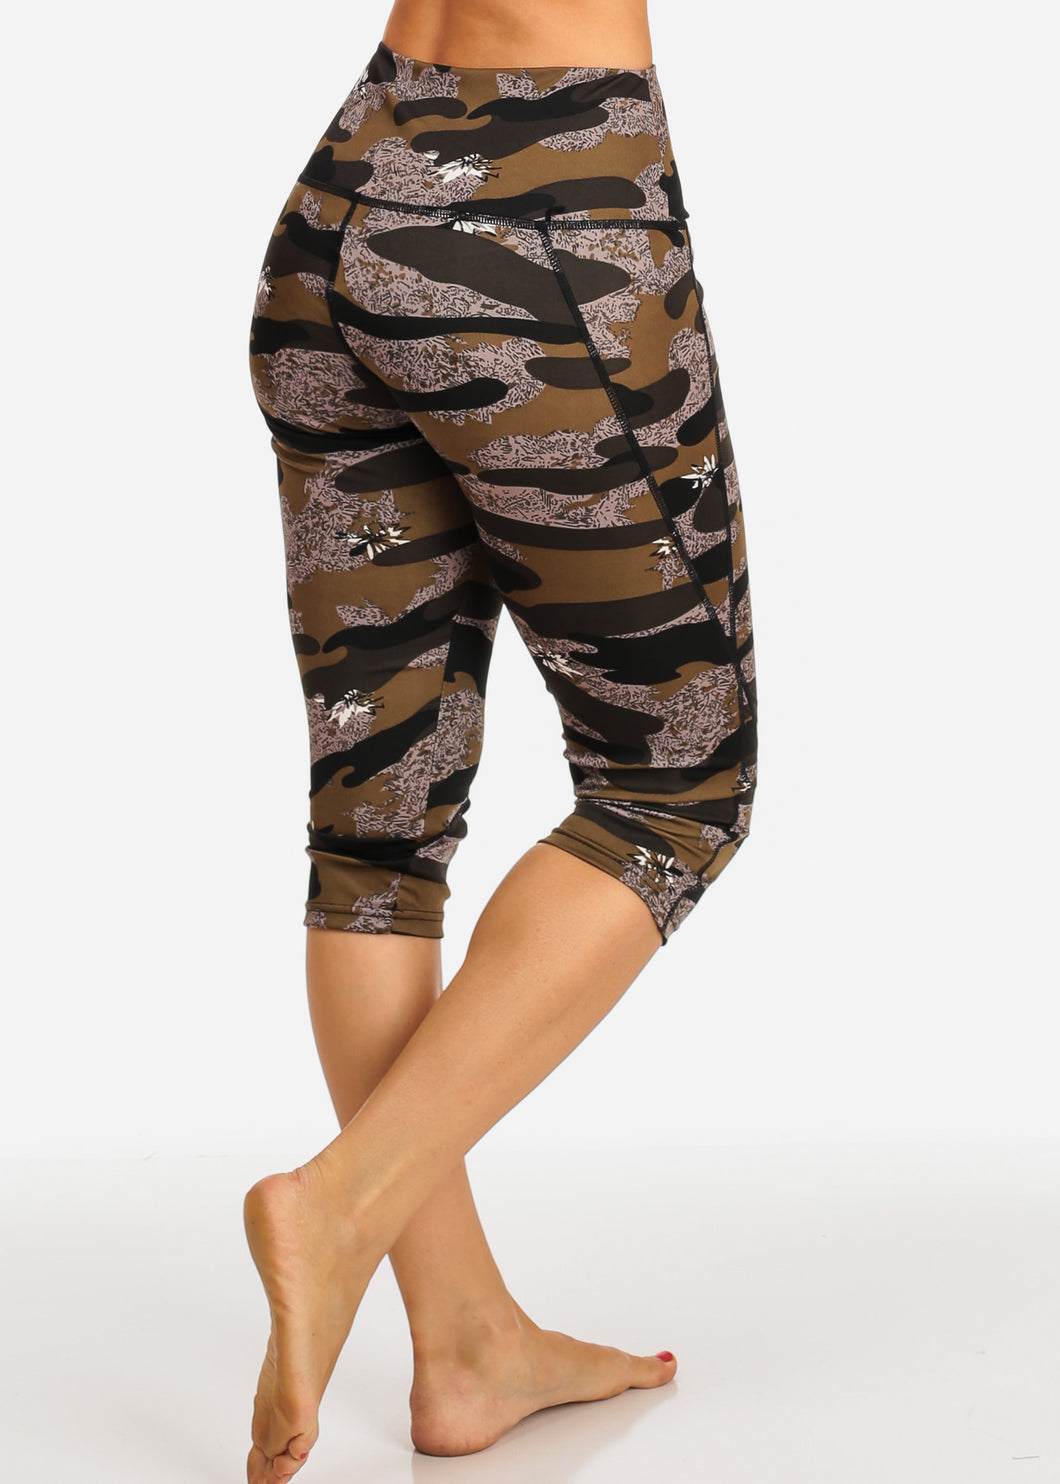 Camouflage Women's Capri Leggings Pull on Style D1098